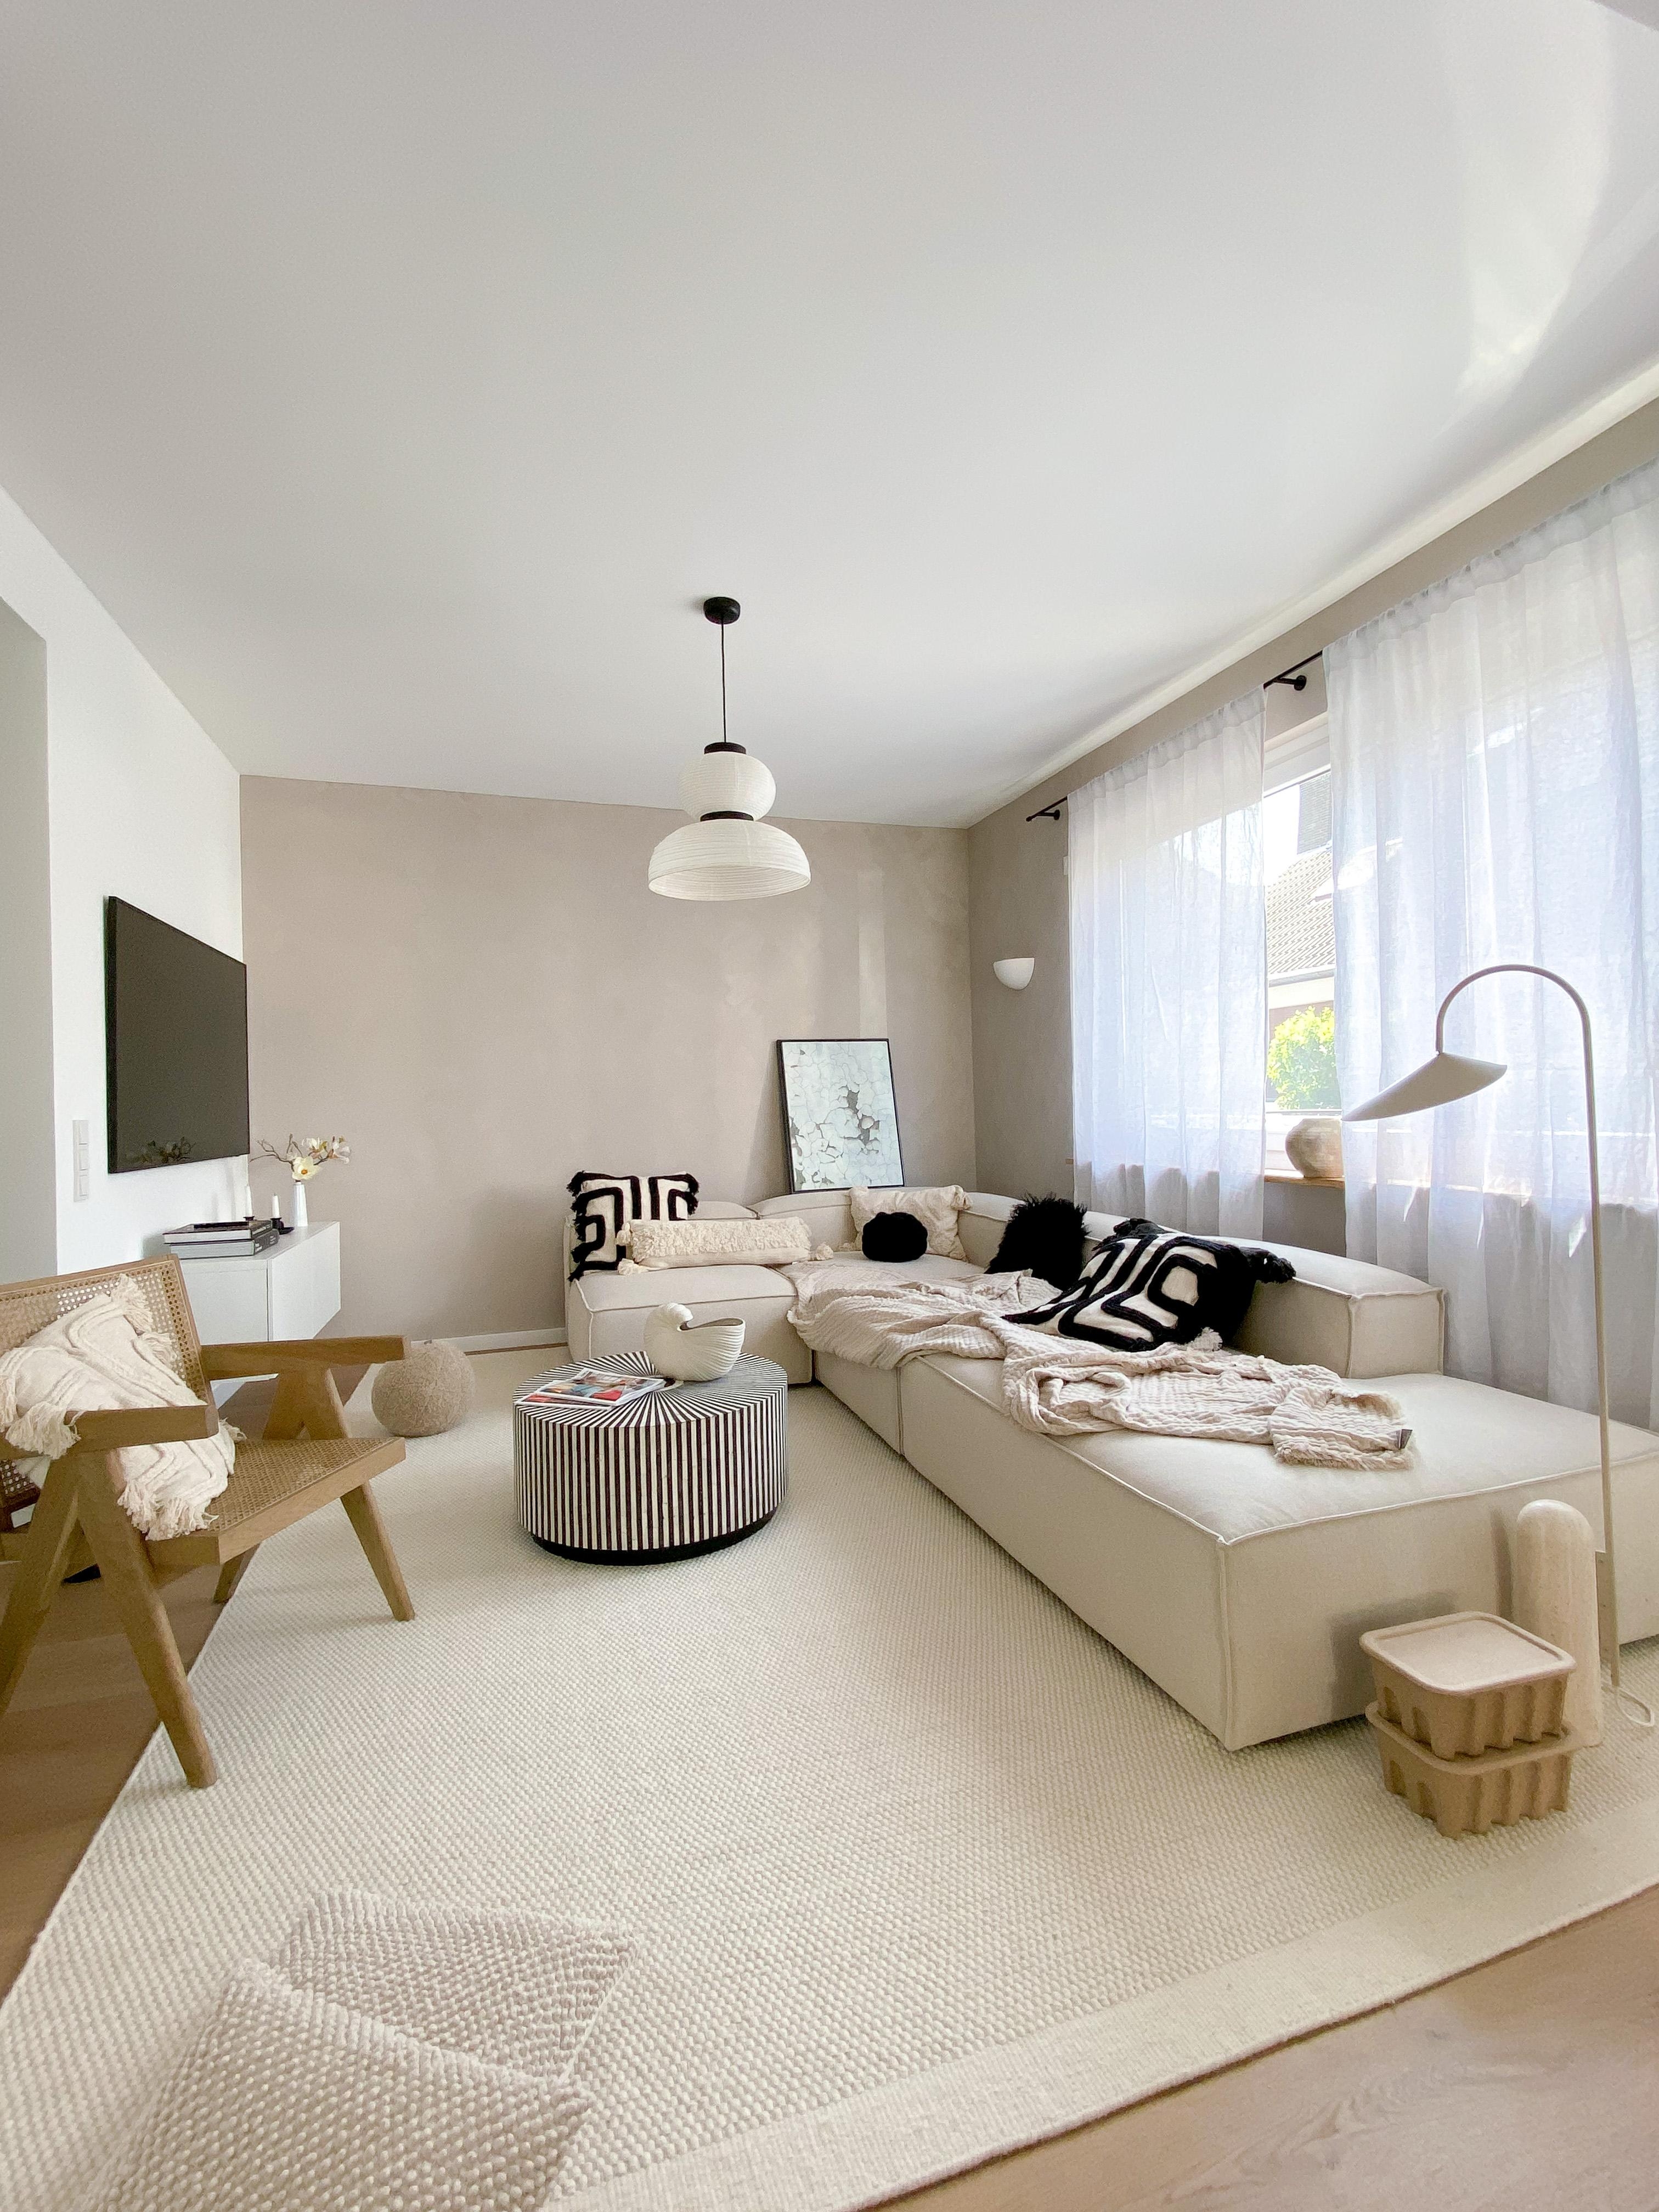 Entspannung am Wochenende #sofa #wohnzimmer #livingroom #kalkfarbe